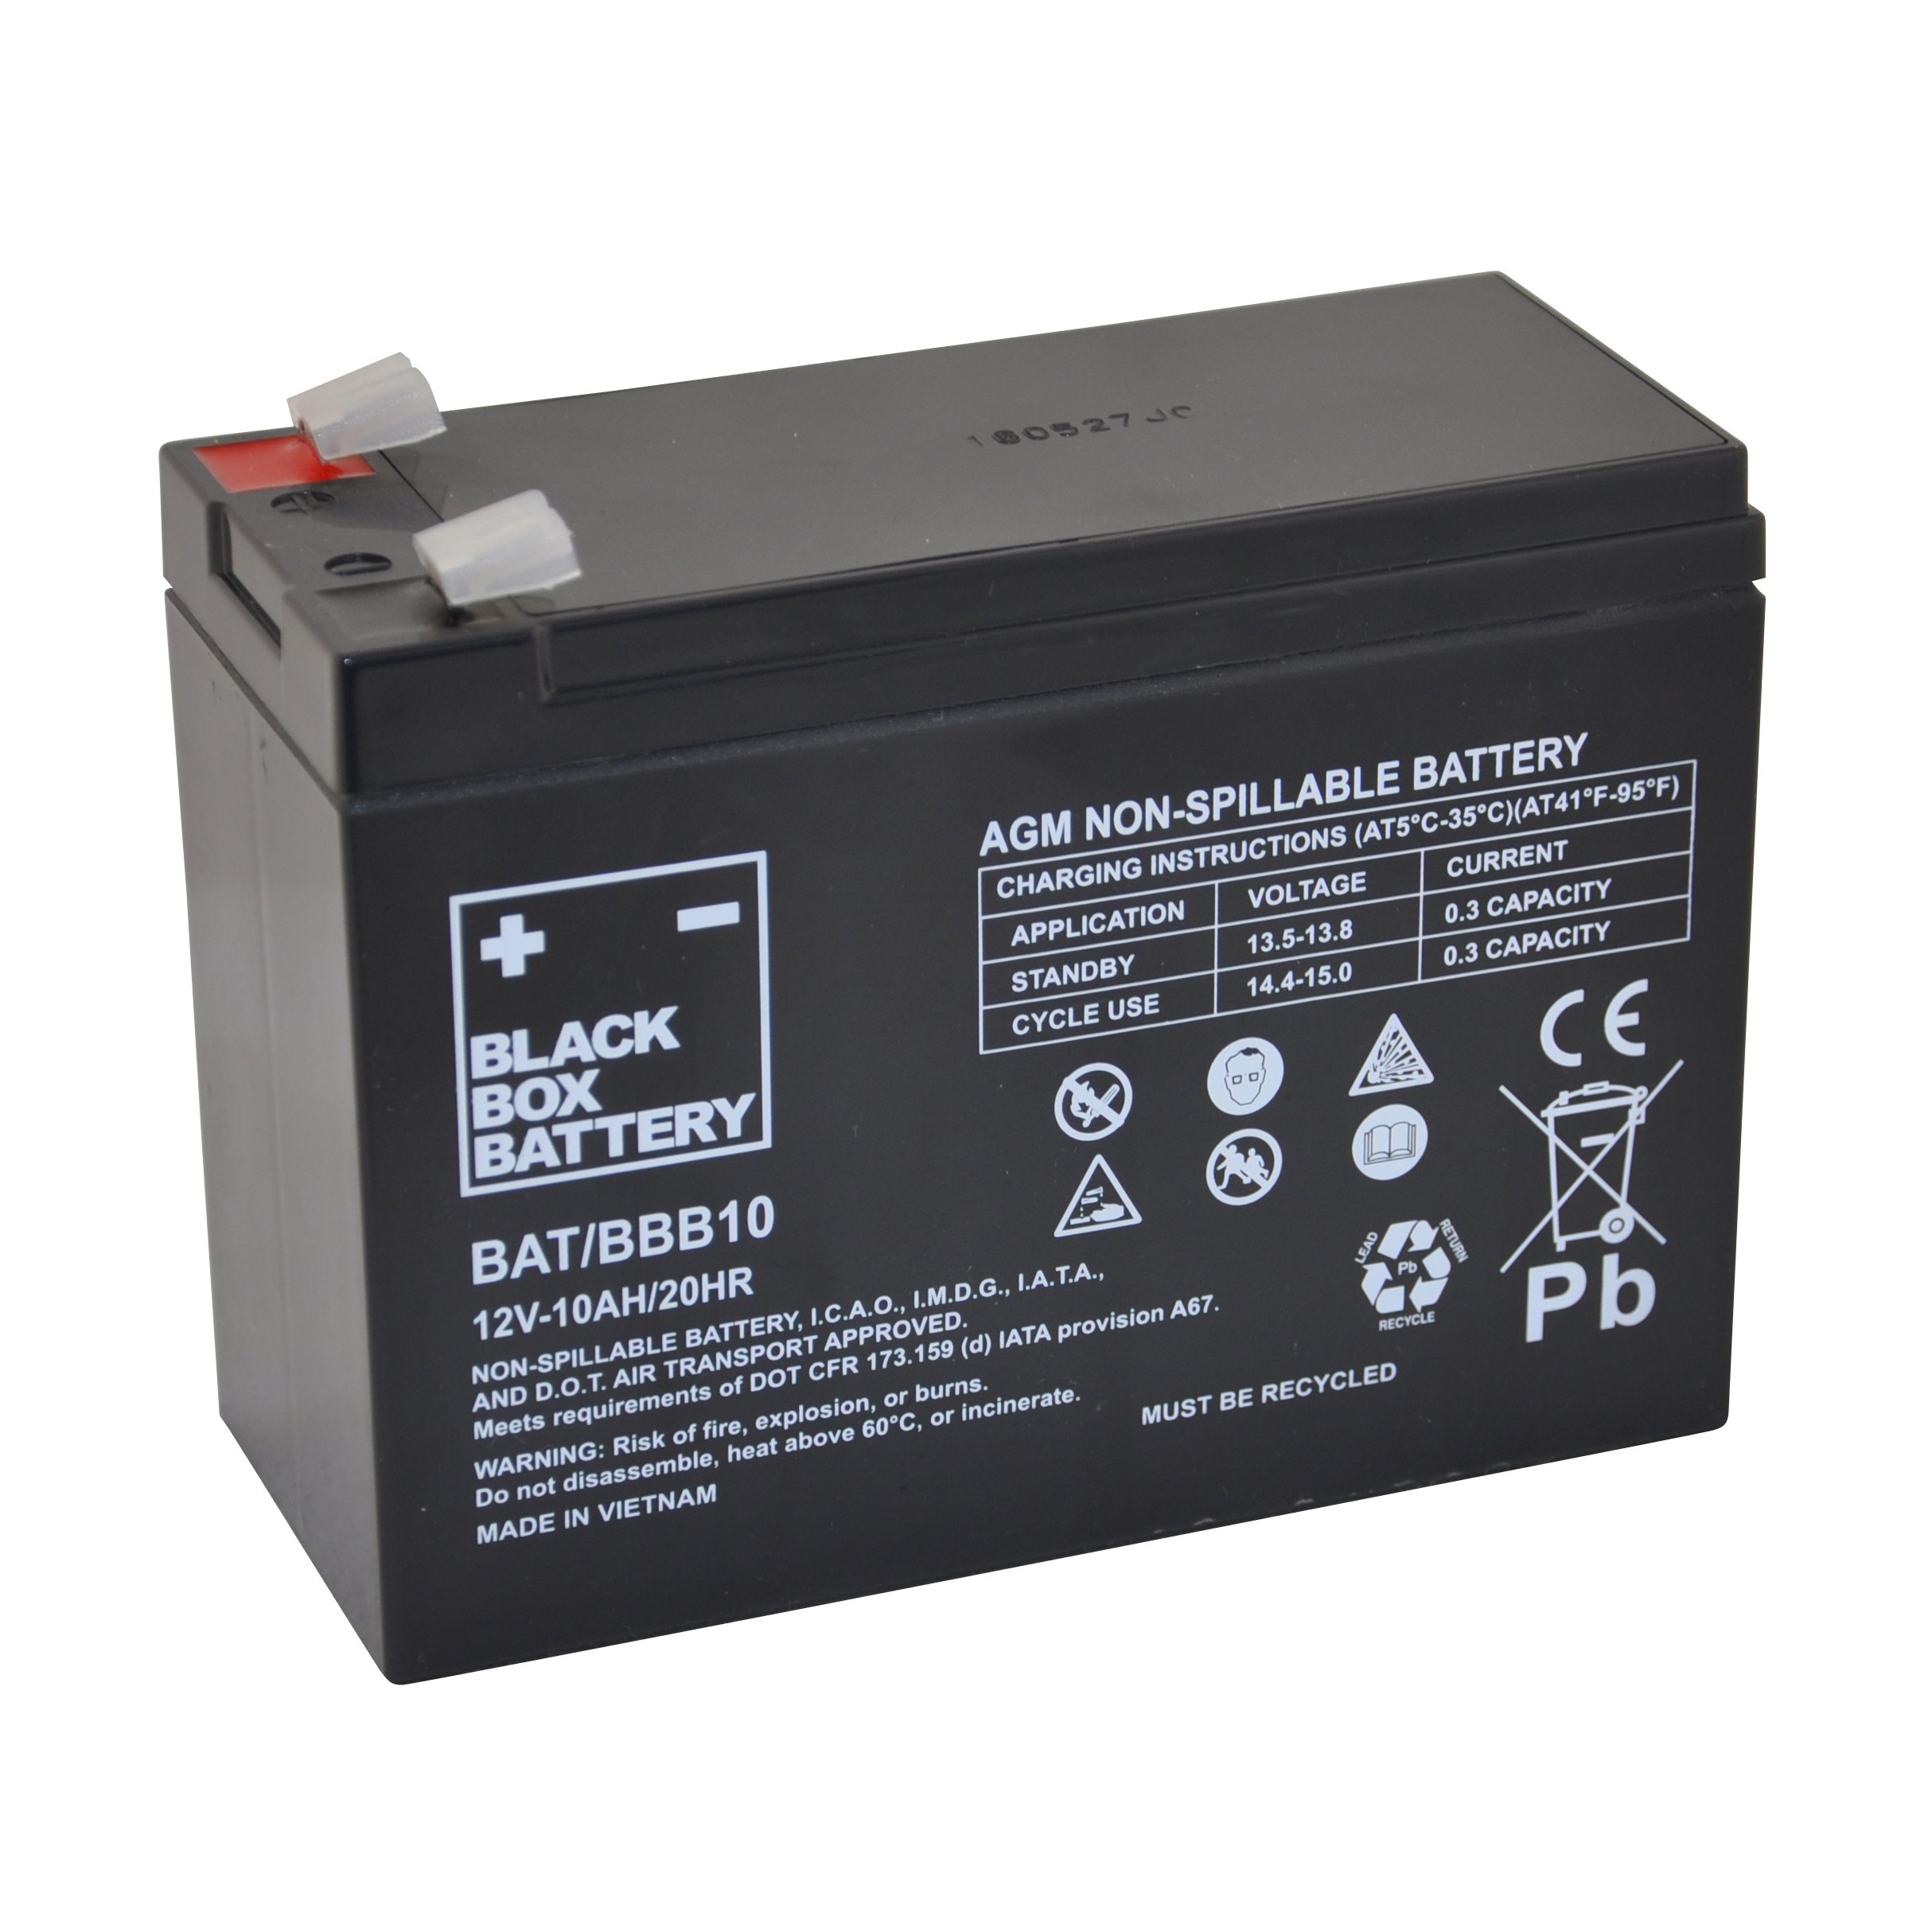 12v 10ah. 12v 10ah BBB Sealed lead acid (AGM) Mobility Scooter Battery. 12v10ah/10hr. GFM 10(12v10ah/20hr) non-Spillable. Non-Spillable аккумулятор.